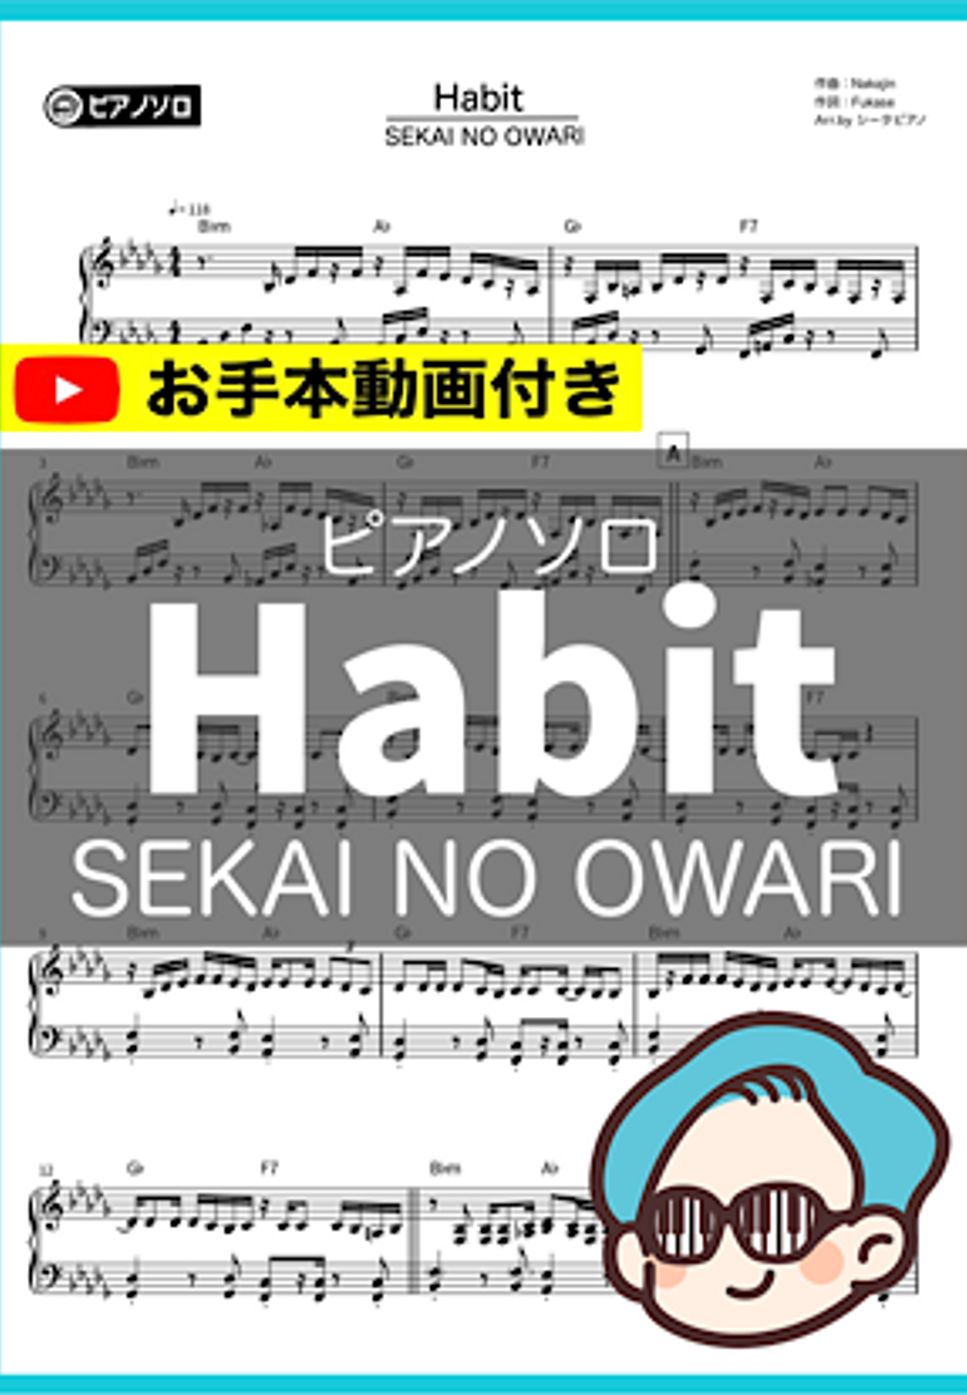 SEKAI NO OWARI - Habit by シータピアノ